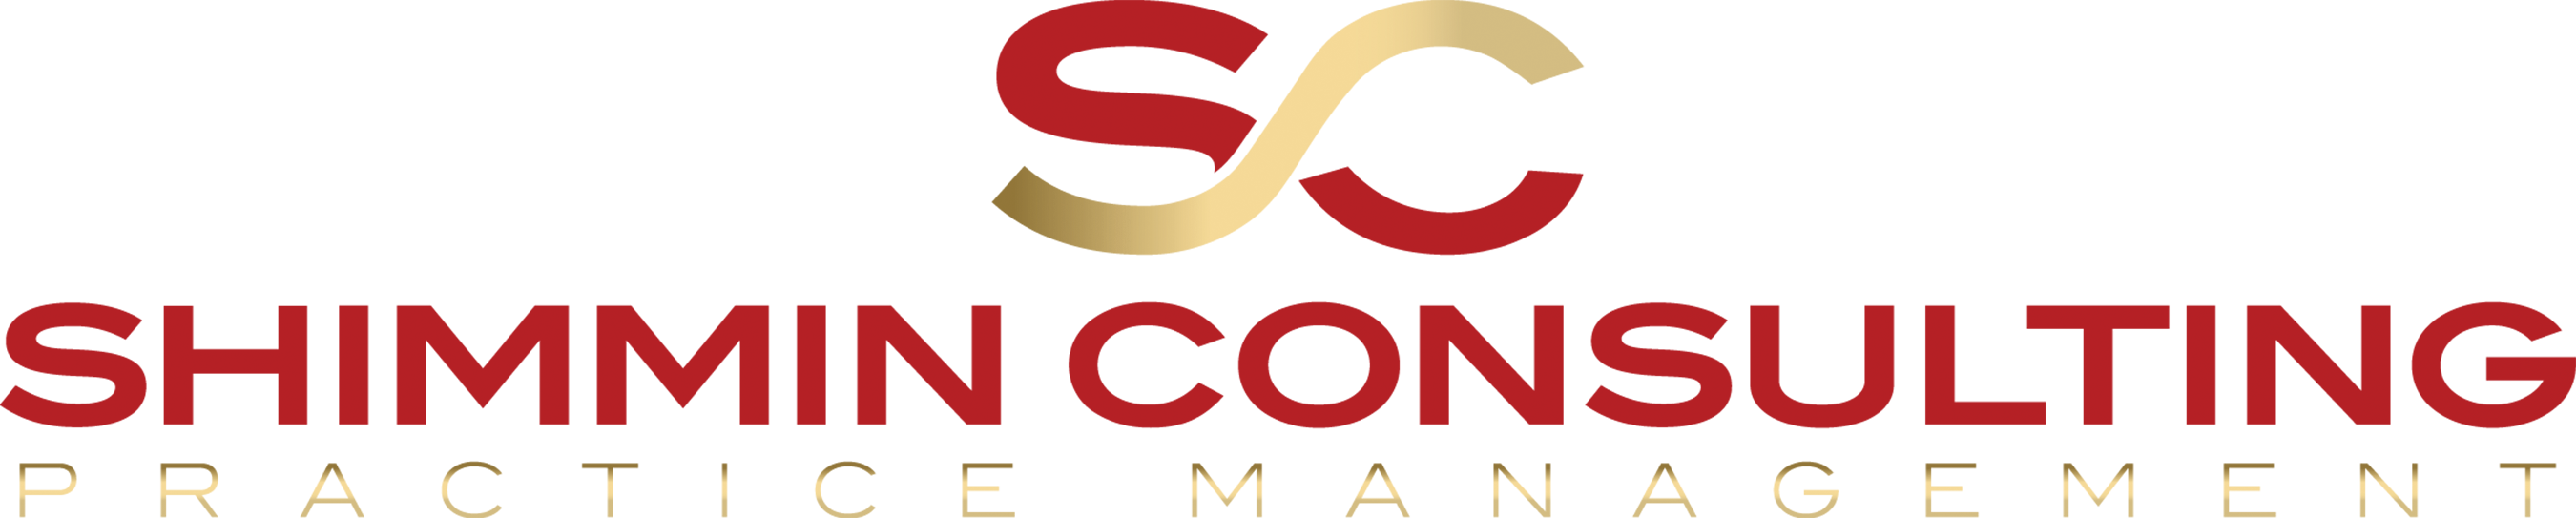 SC Top Logo1